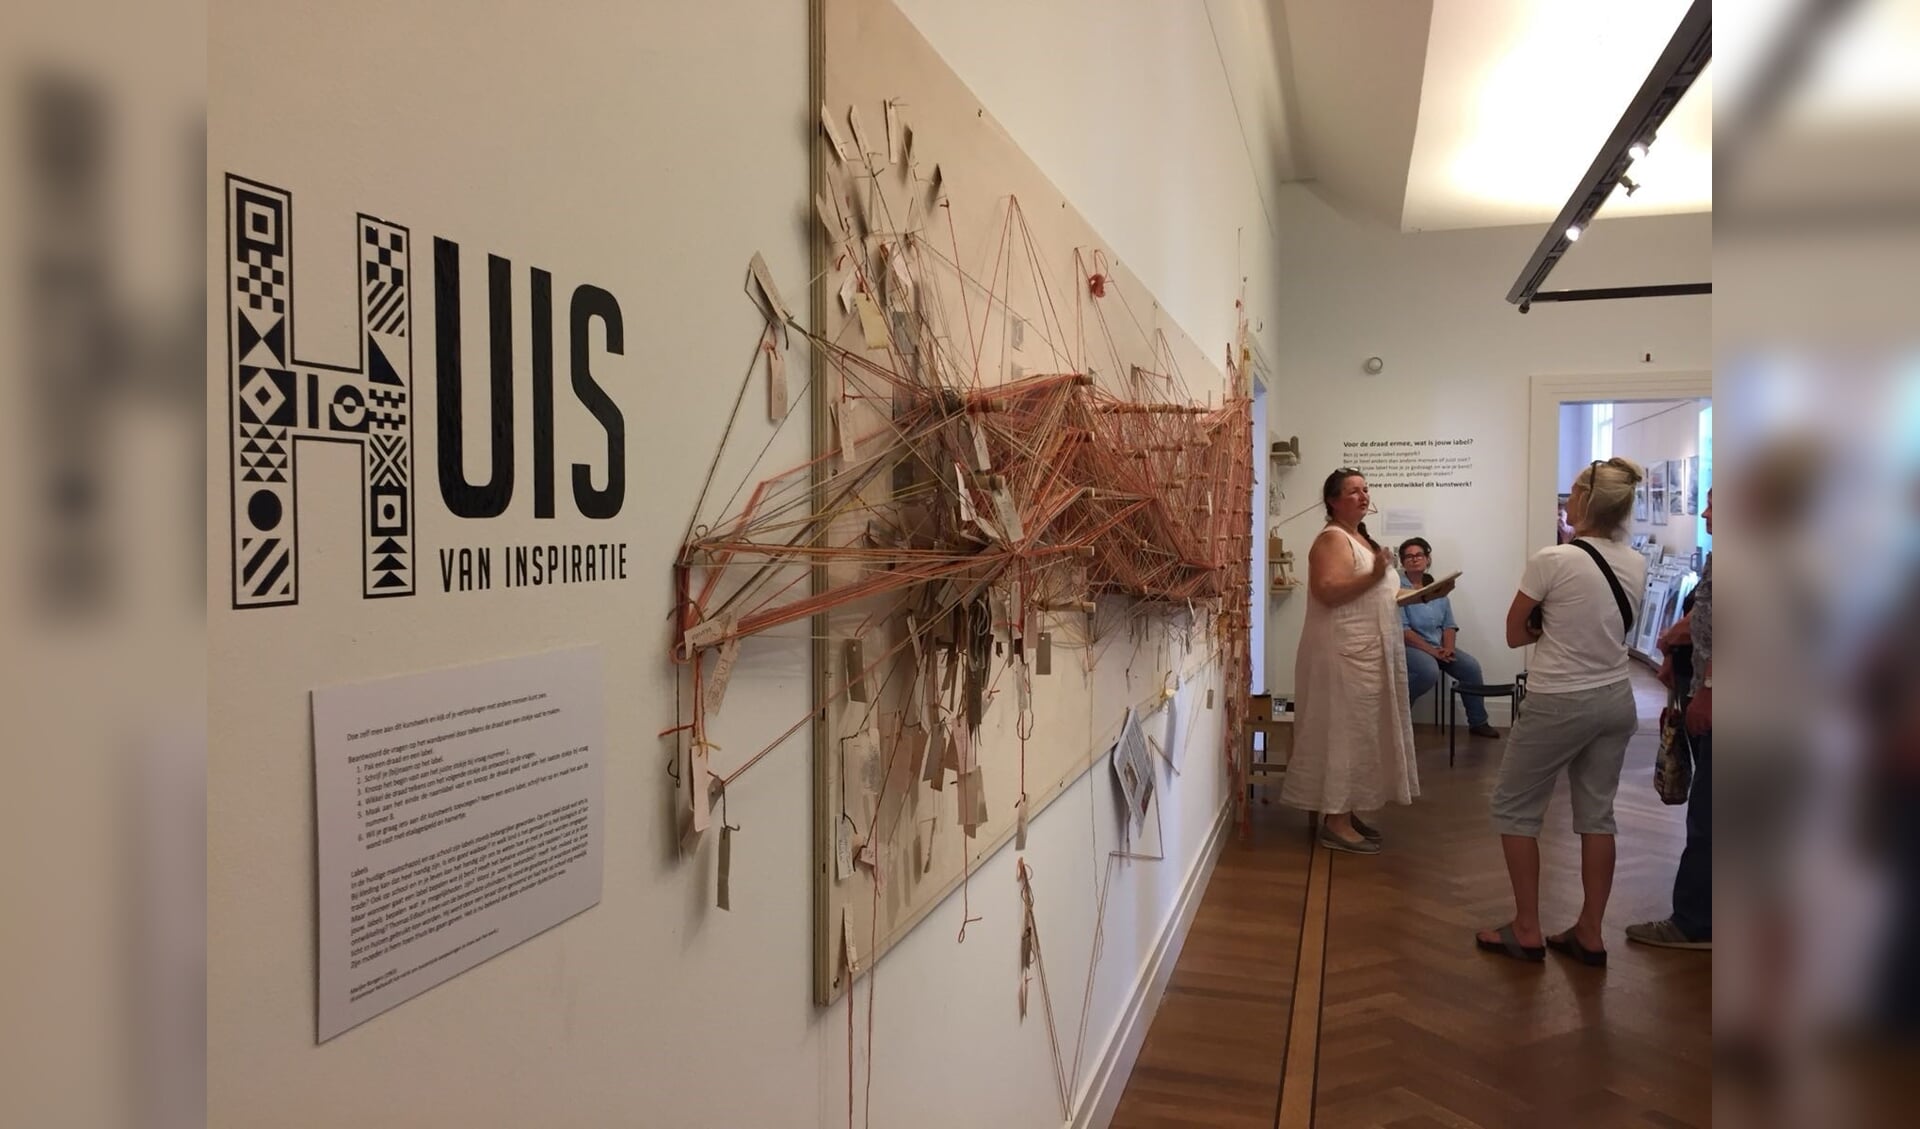 De afsluiting van de interactieve installatie van Marijke Bongers.